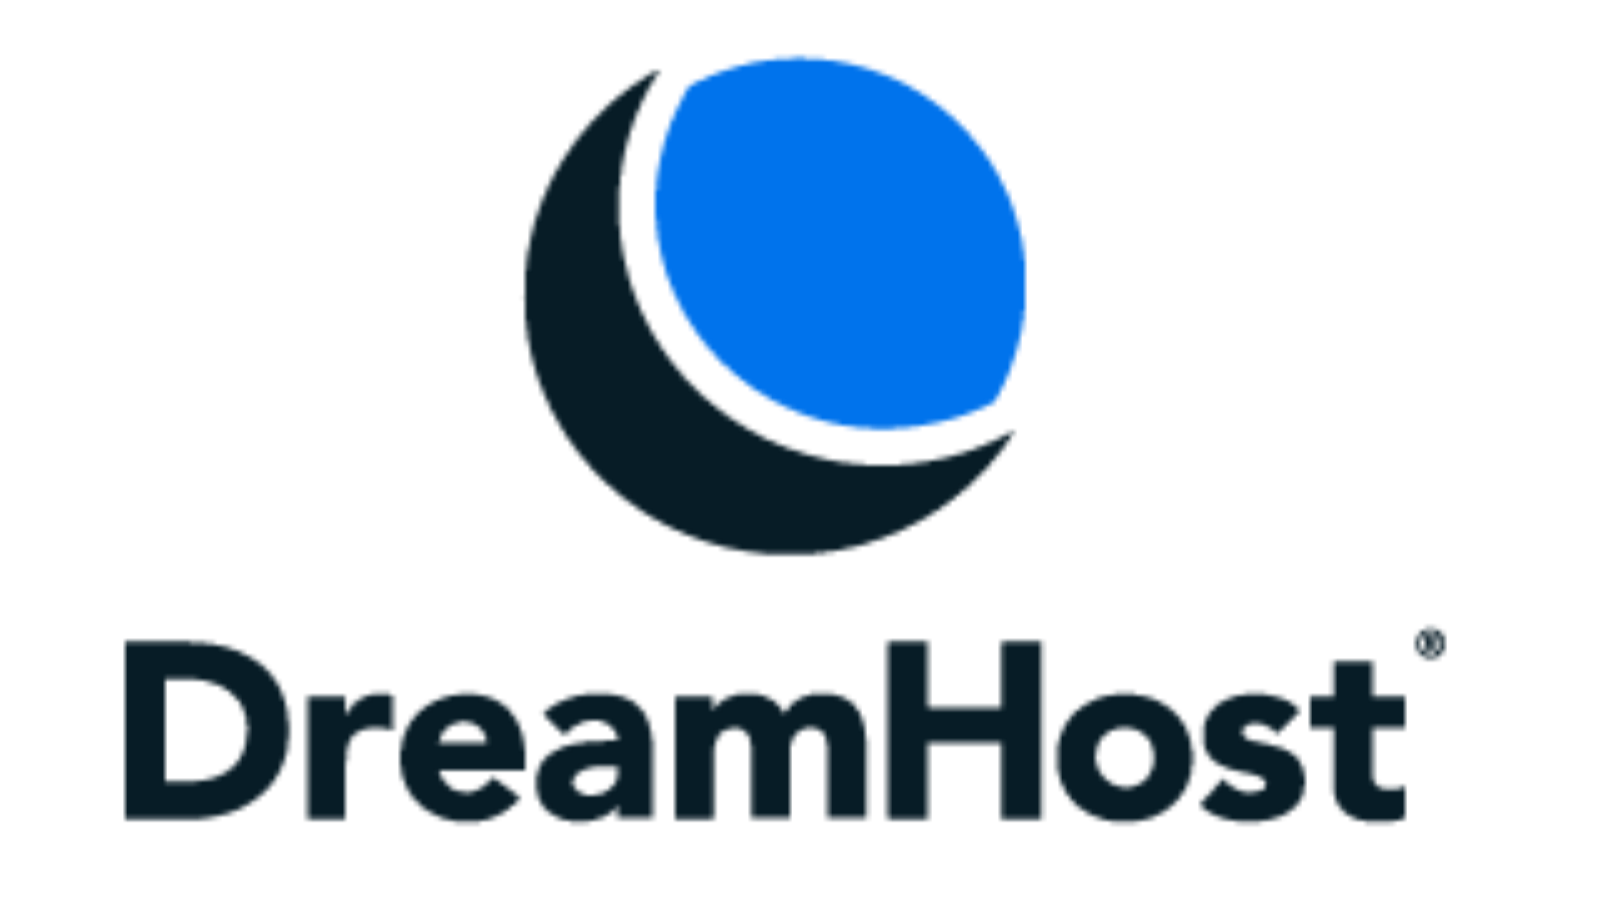 DreamHost